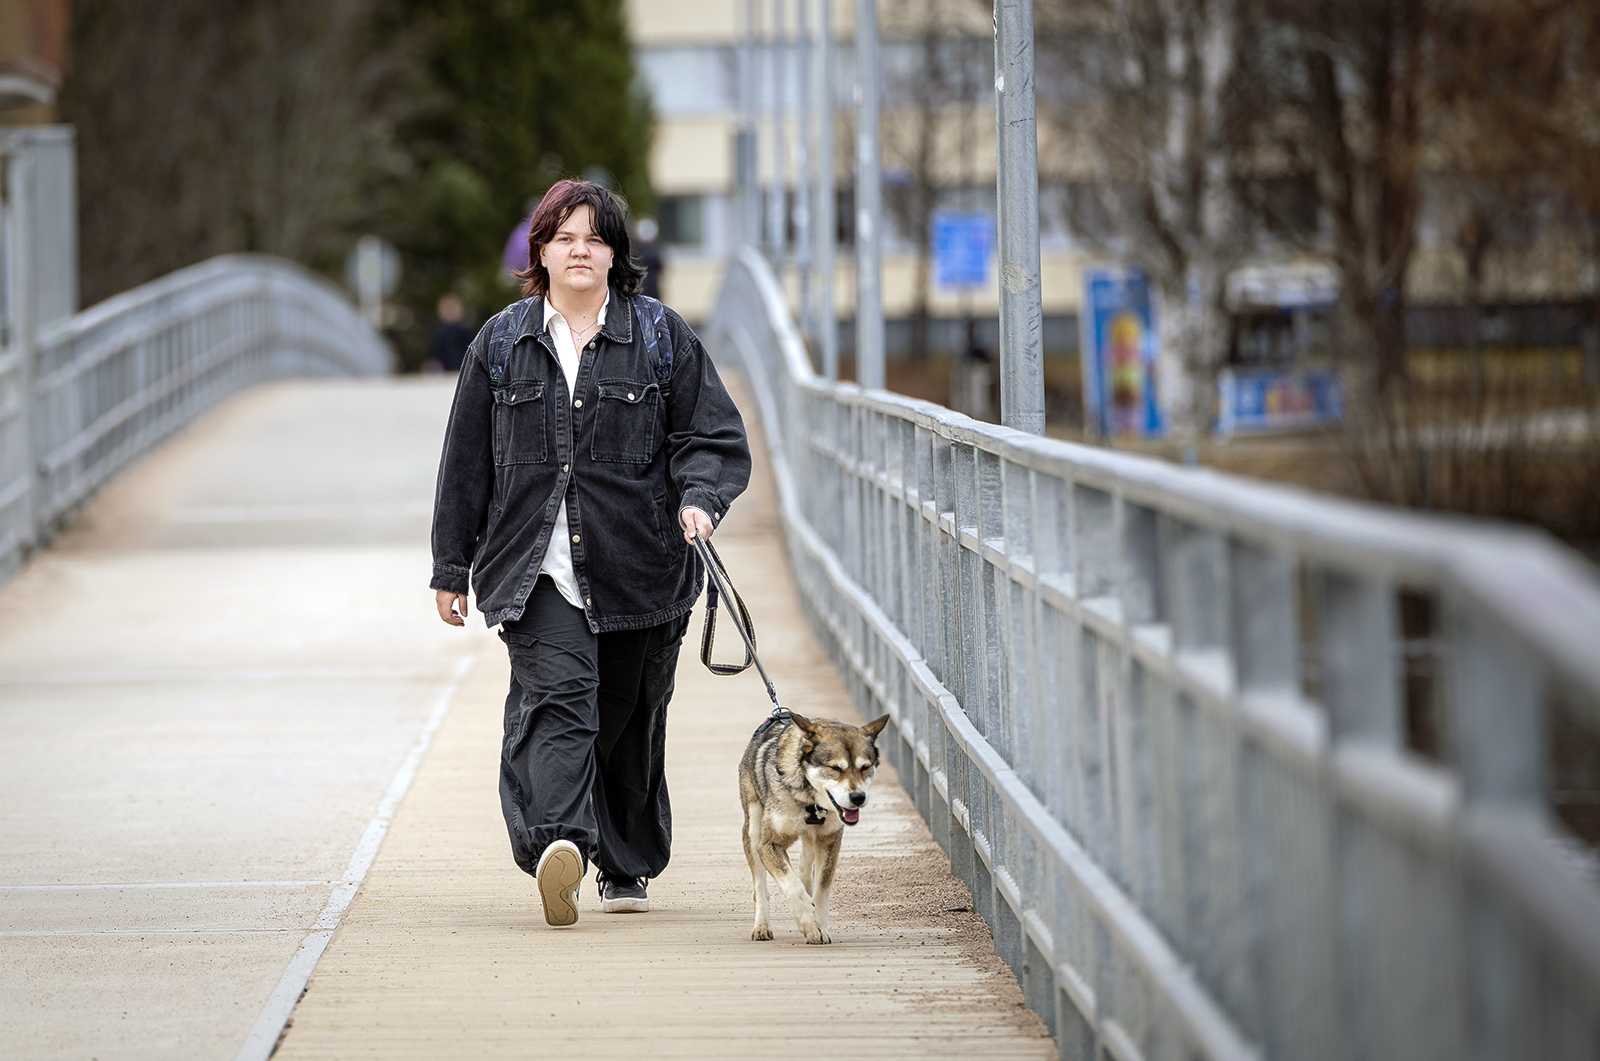 Mirella kuvattuna sillalla lenkittämässä valko-harmaata koiraa.